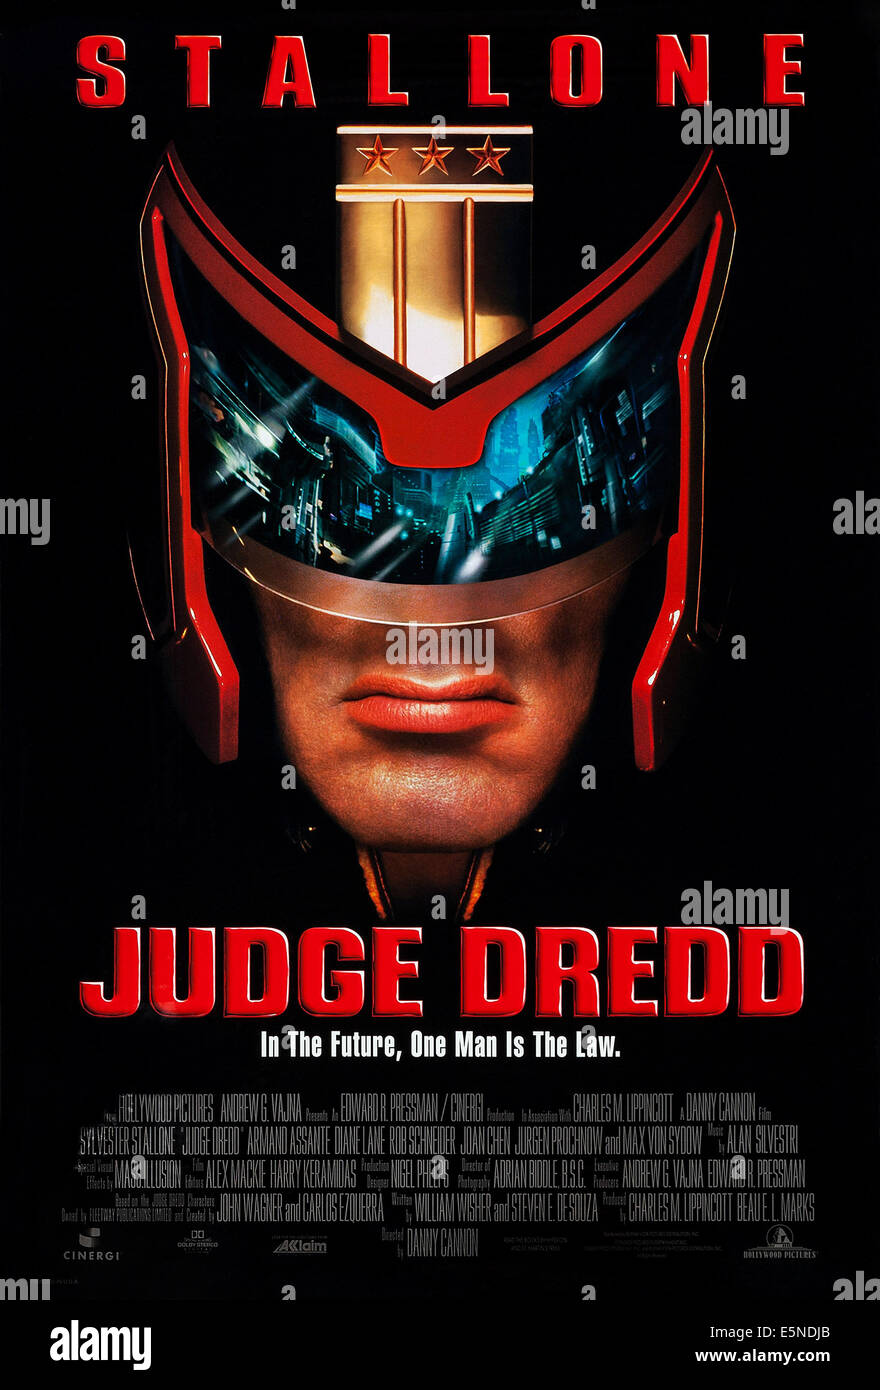 JUDGE DREDD, U.S. locandina, Sylvester Stallone, 1995. © Buena Vista/cortesia Everett Collection Foto Stock